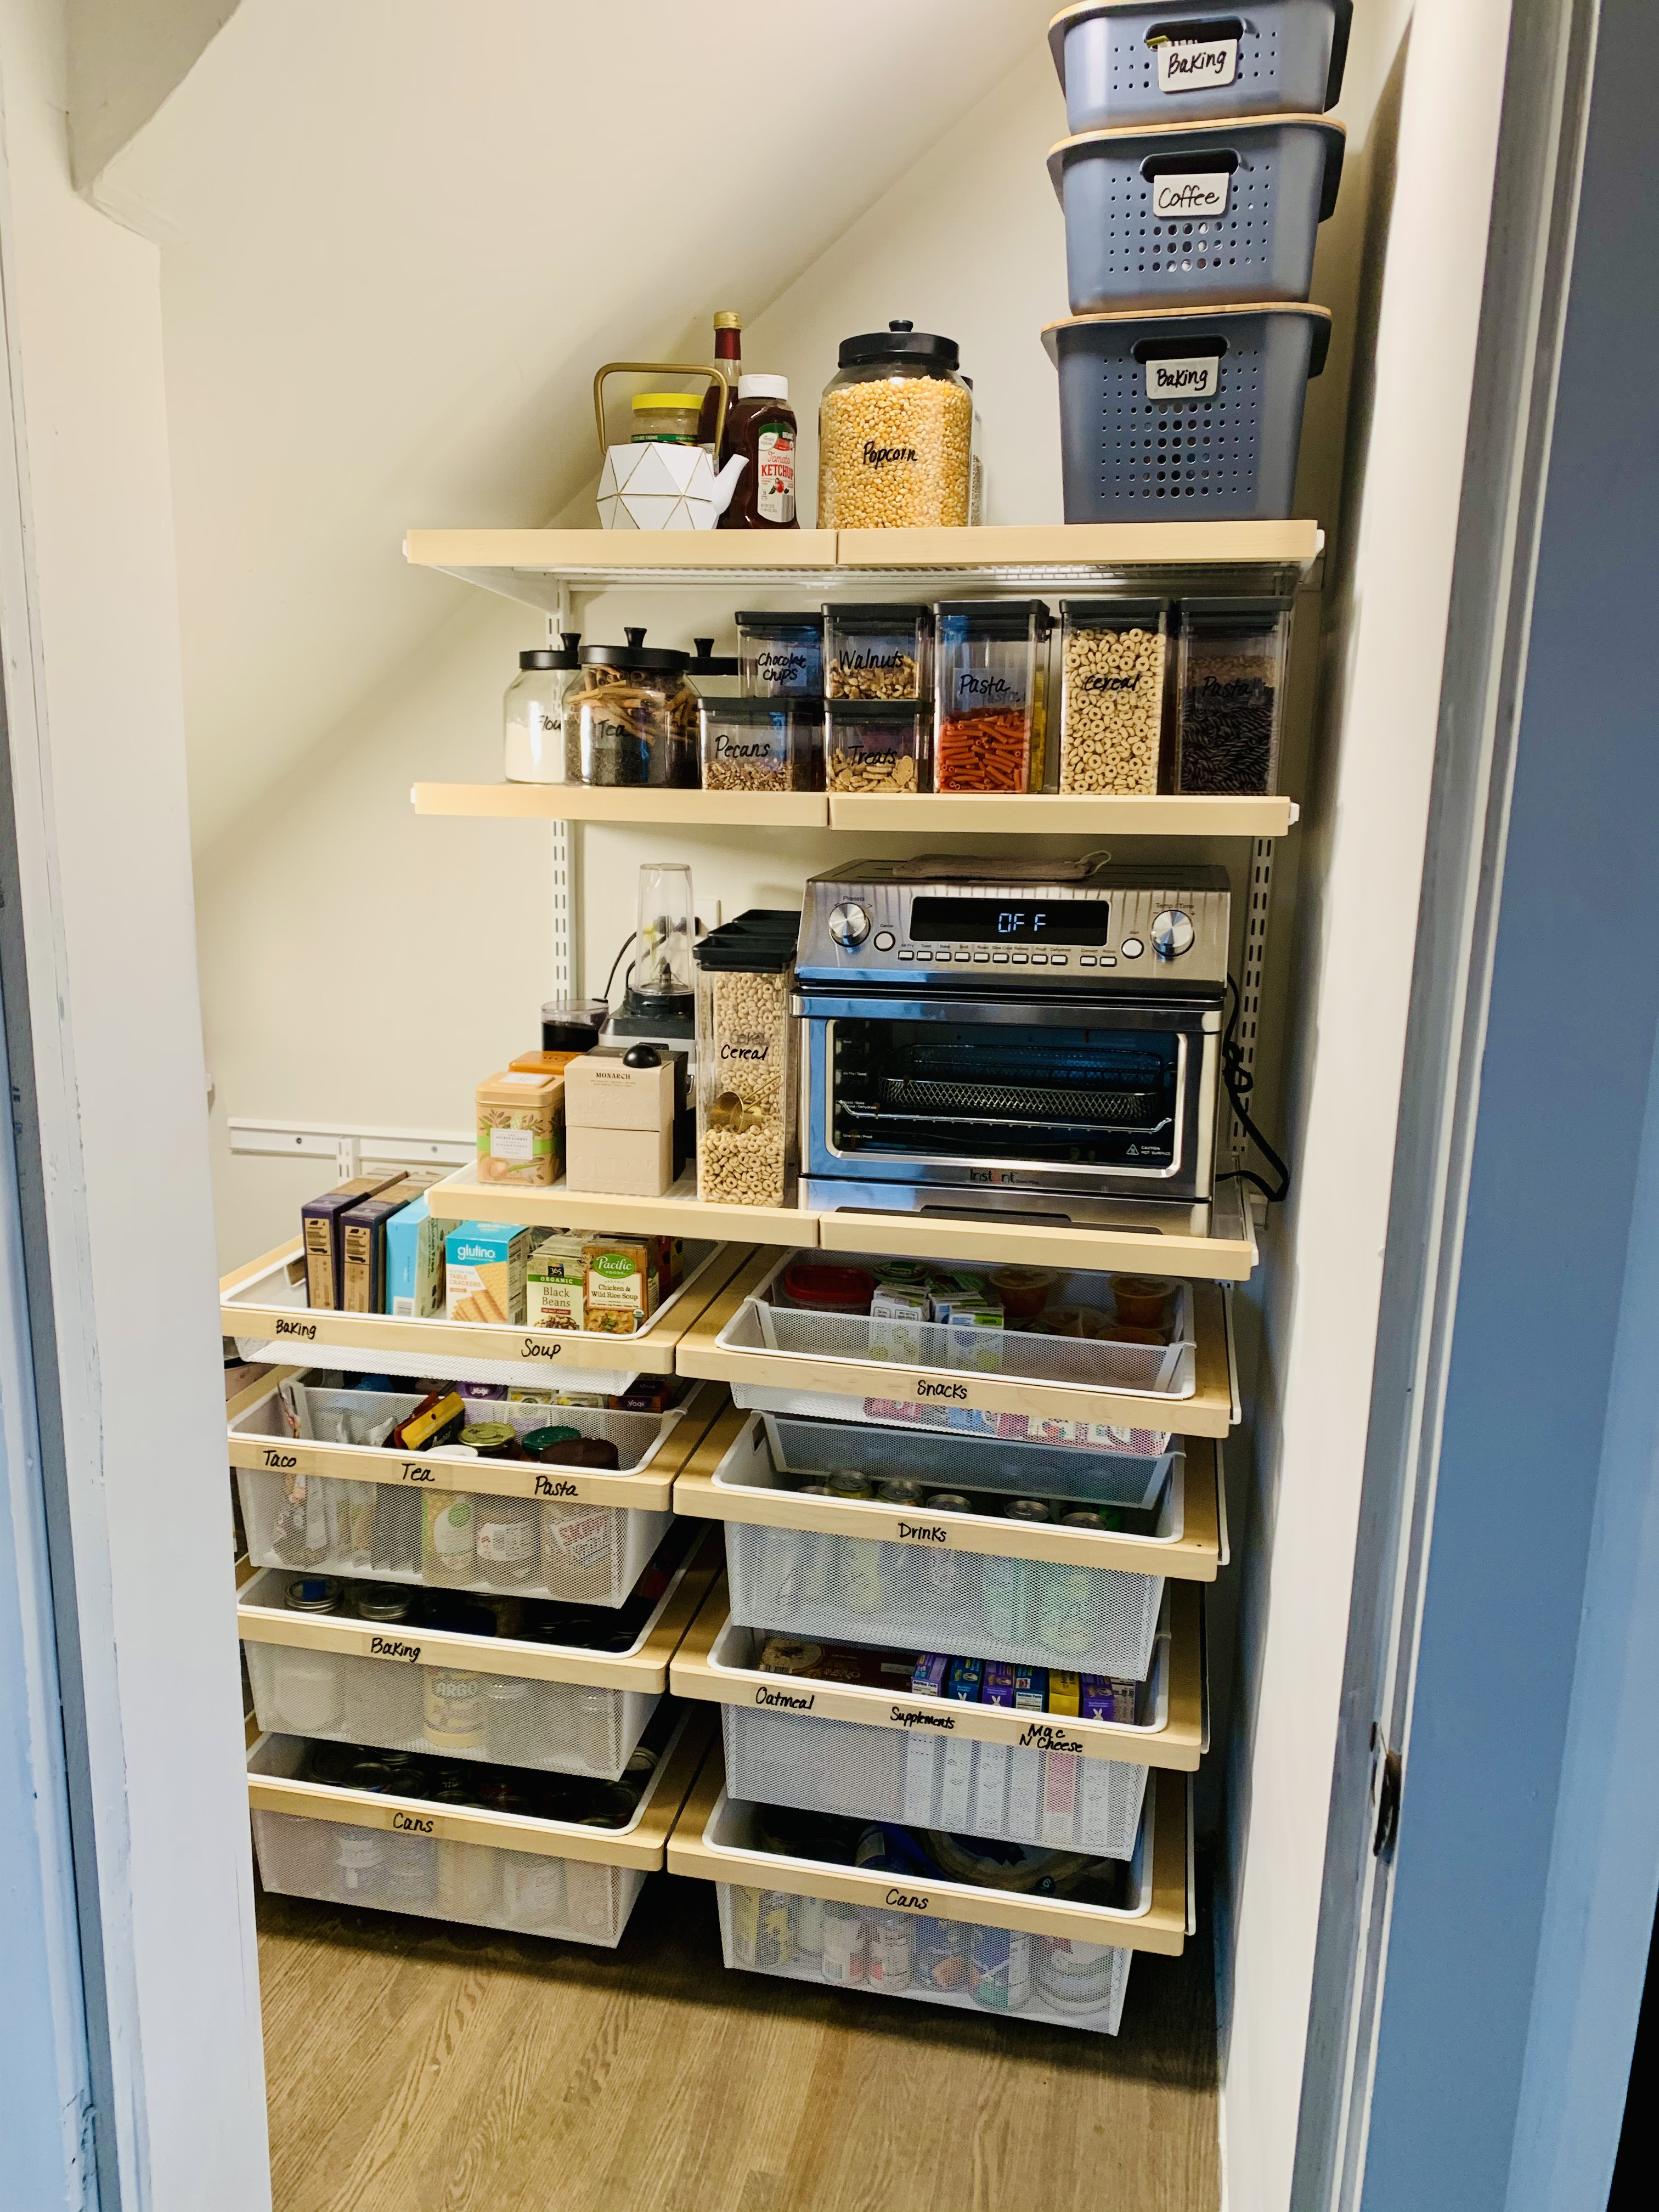 small pantry organization